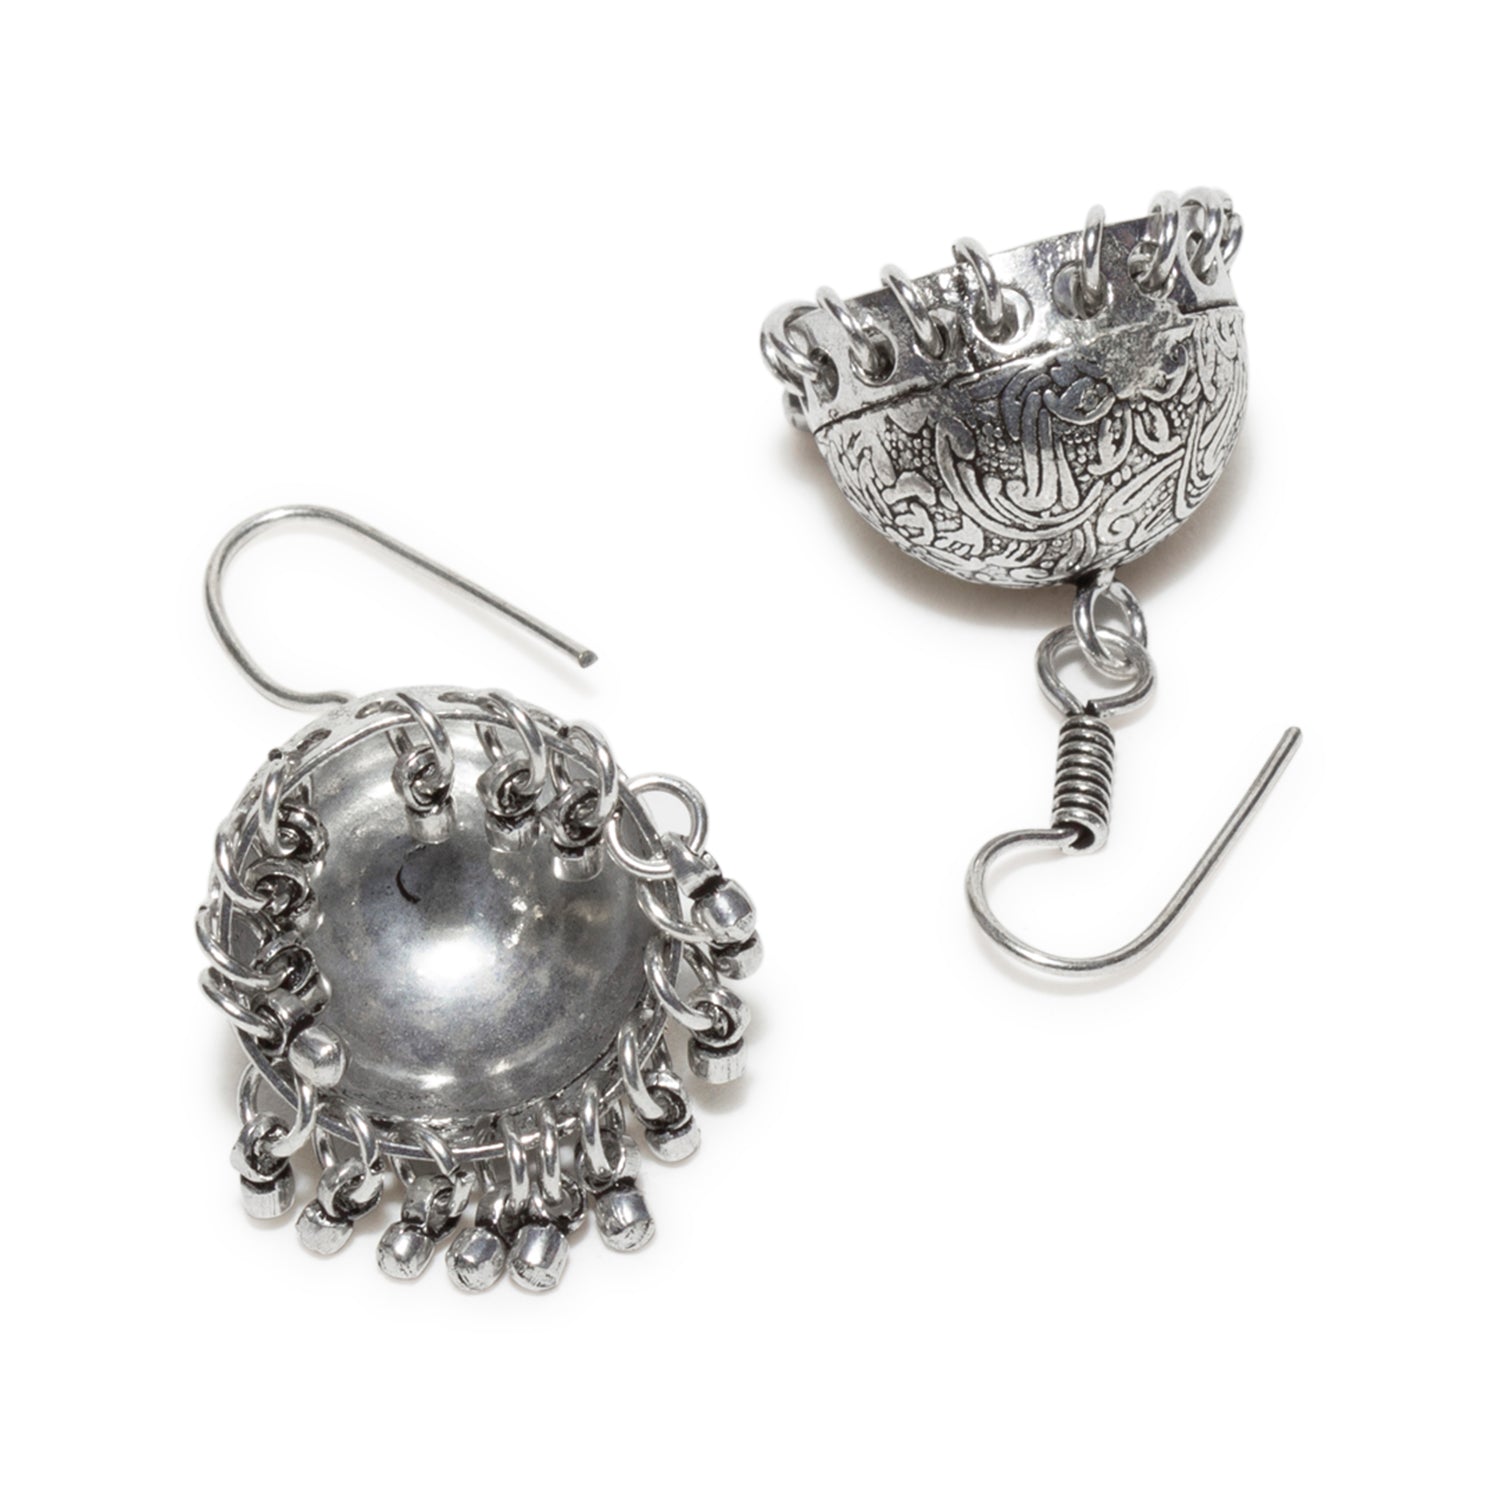 Buy Set Free Oxidized Earrings In 925 Silver from Shaya by CaratLane